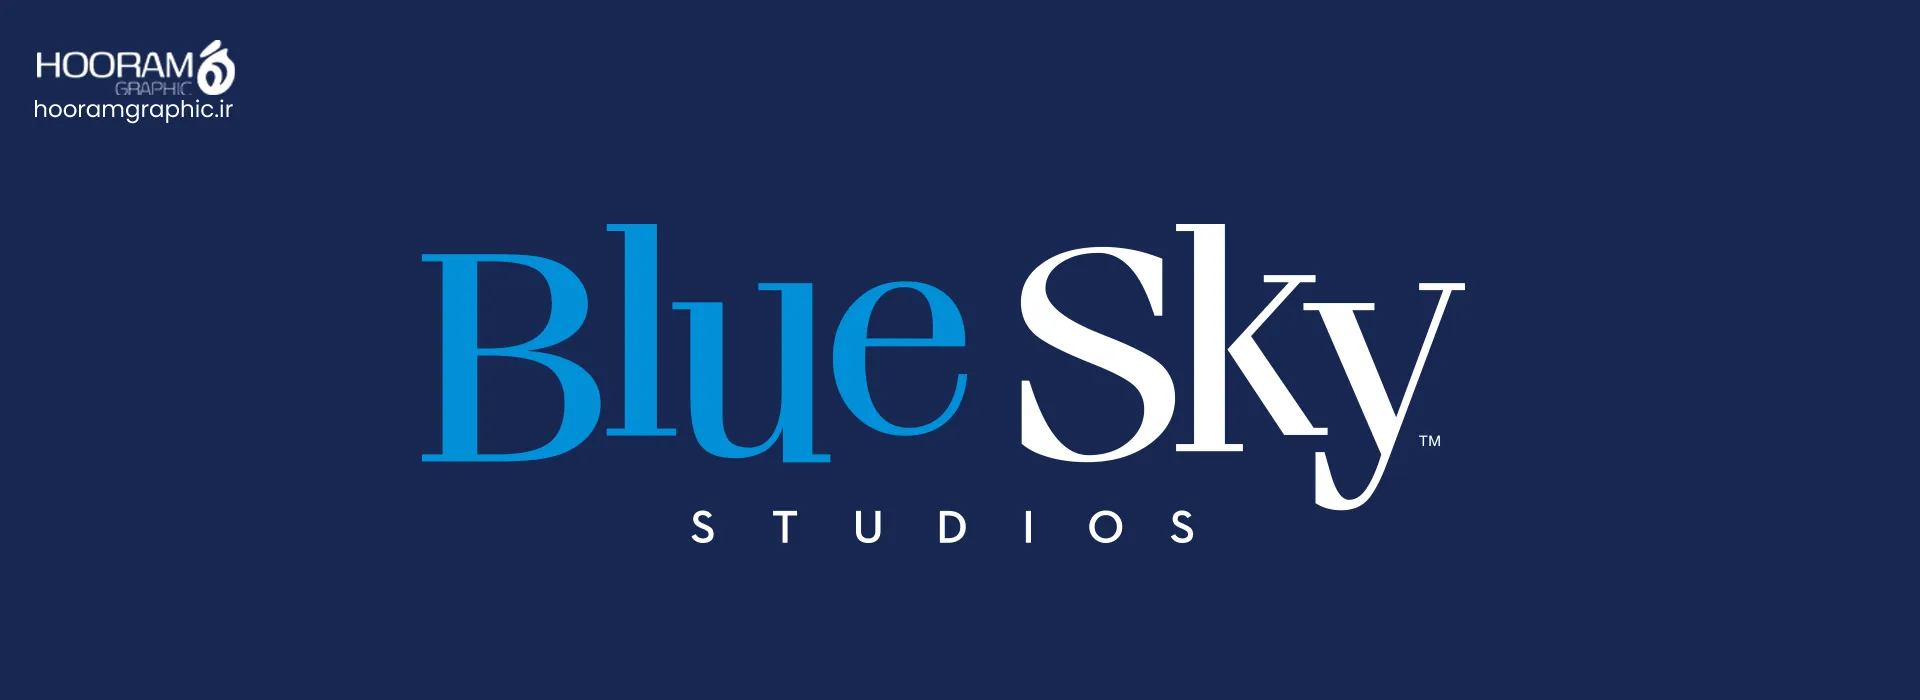 bluesky- شرکت های انیمیشن